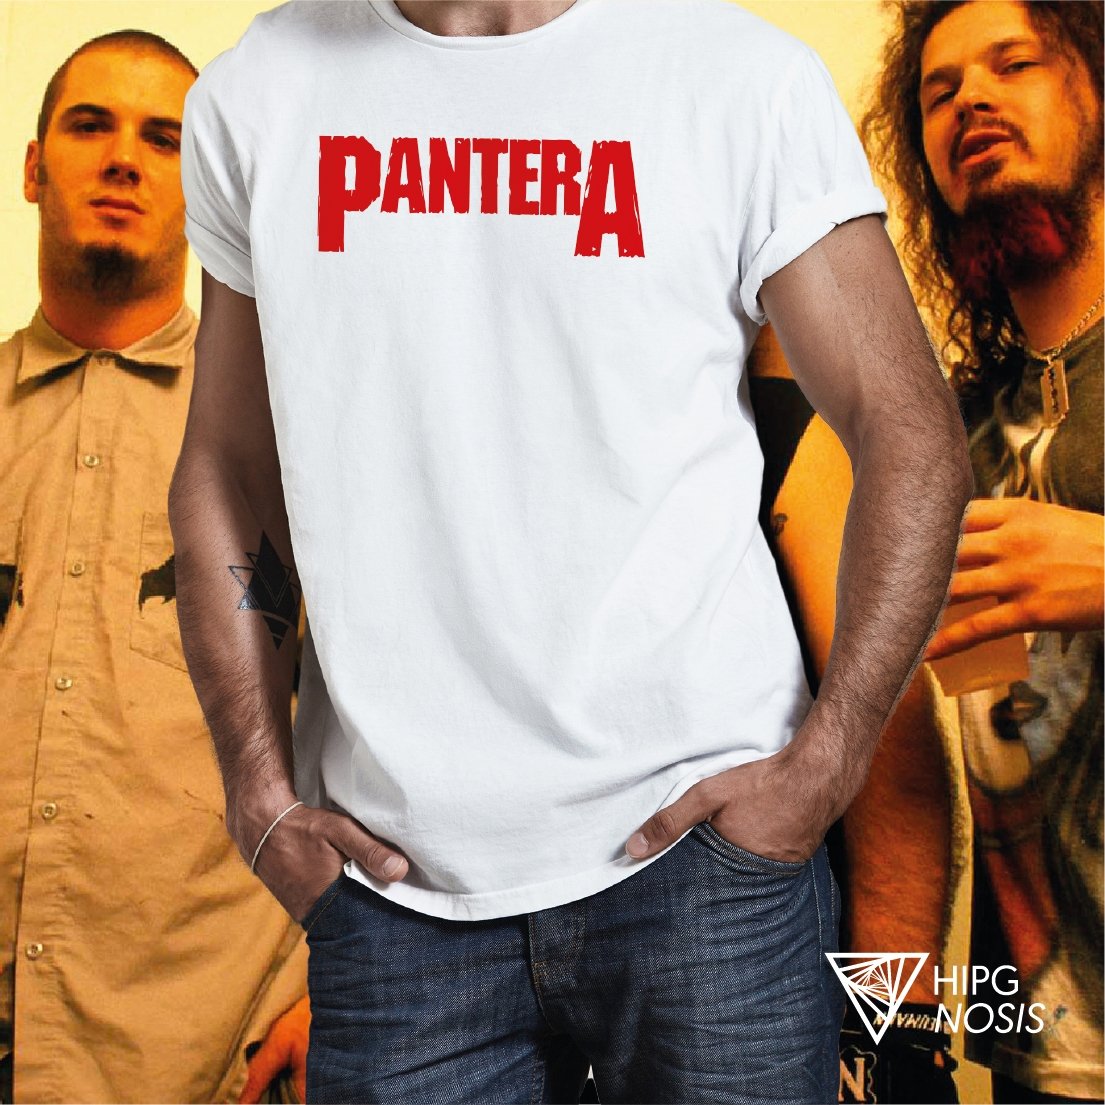 Pantera 01 - Hipgnosis